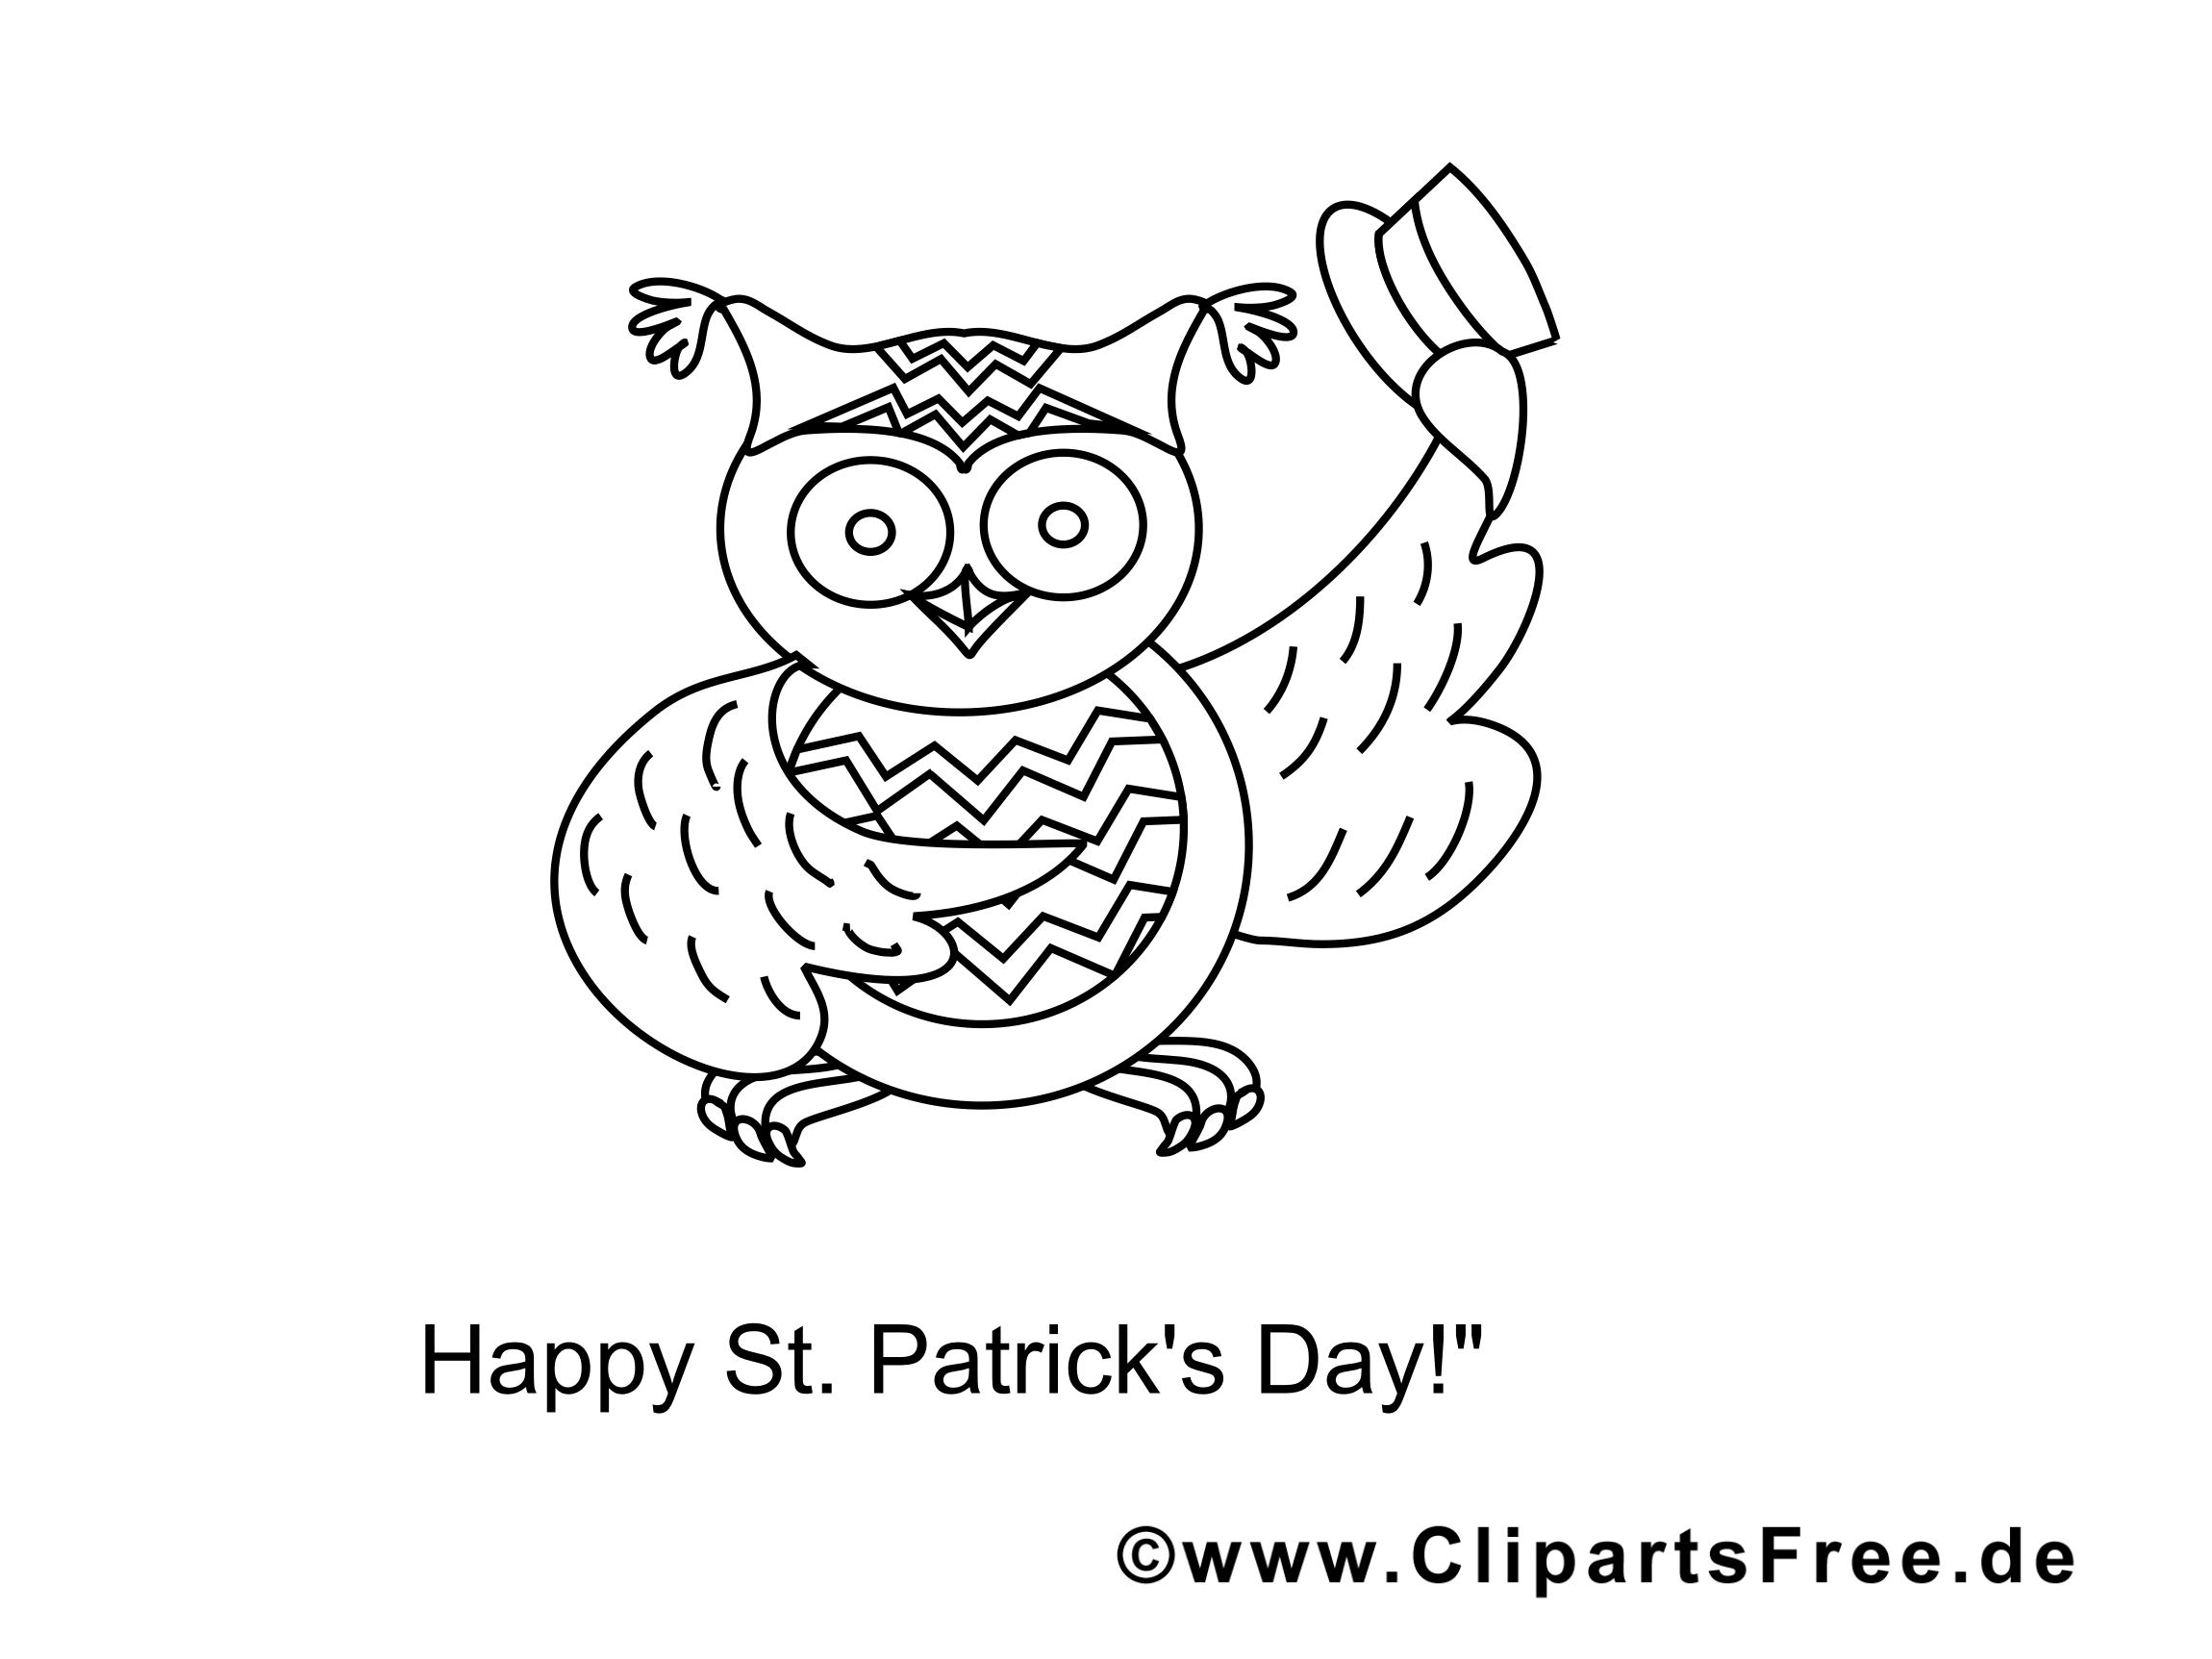 Hibou dessin – Saint-Patrick gratuits à imprimer